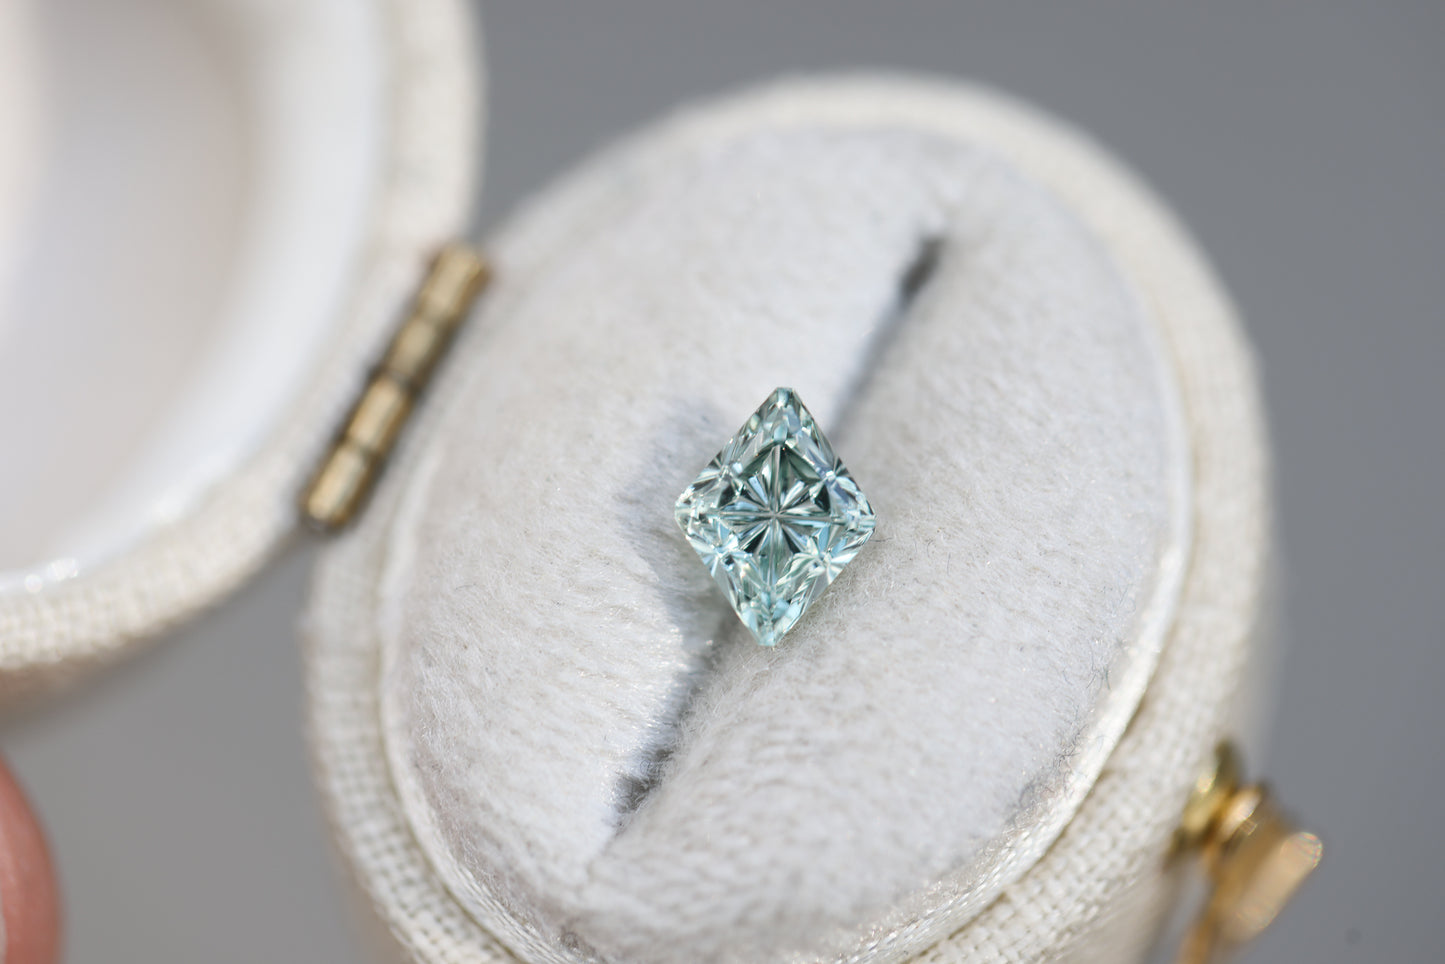 1.33ct diamond cut light green mint sapphire - Starbrite cut by John Dyer